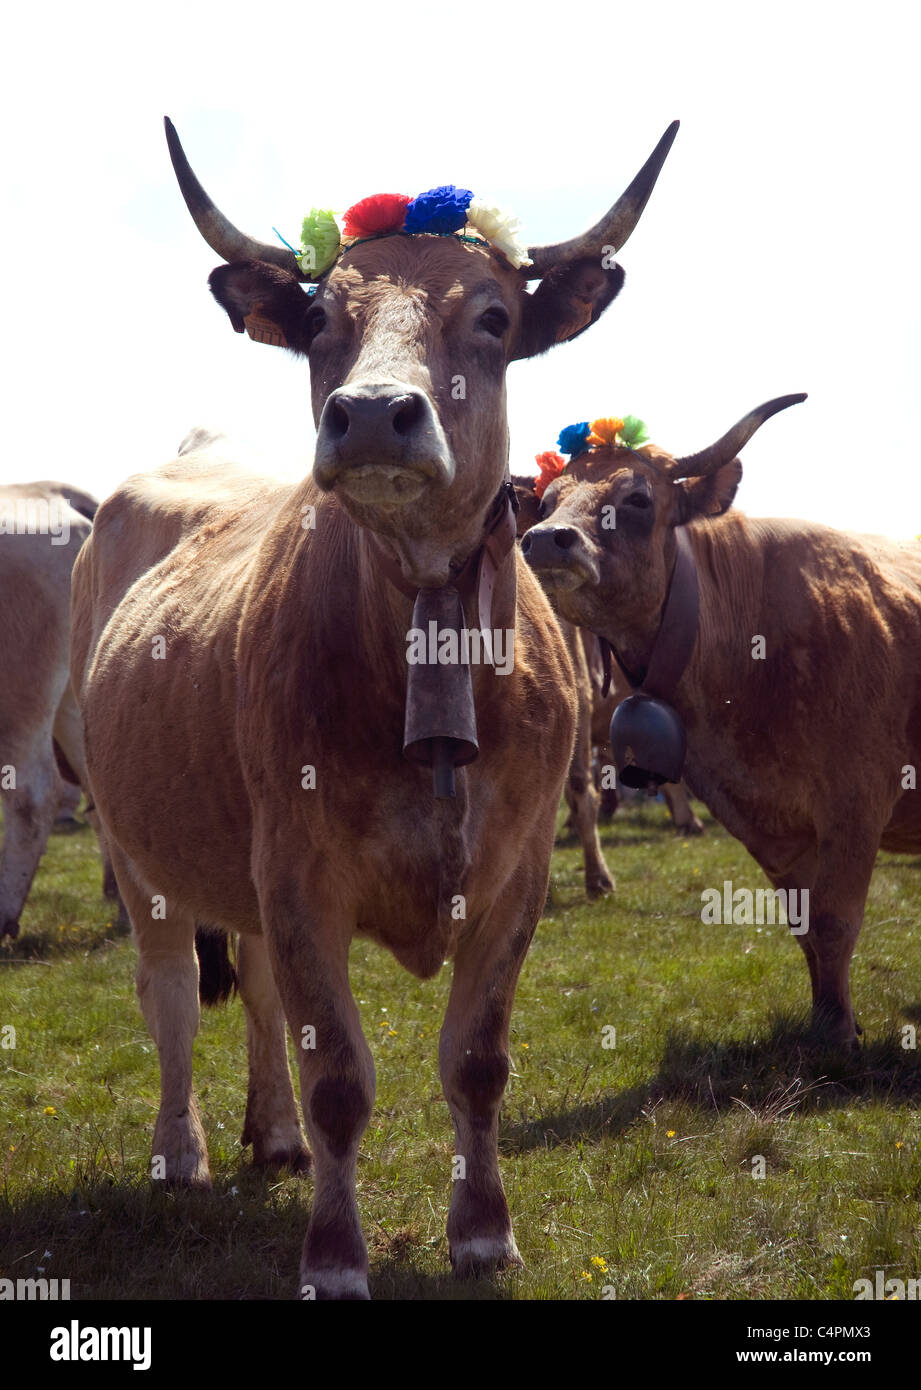 Flores de papel que adornan los cuernos de una vaca Aubrac durante la fiesta anual de la trashumancia, es decir, desplazar manadas desde/hacia pastos de verano Foto de stock